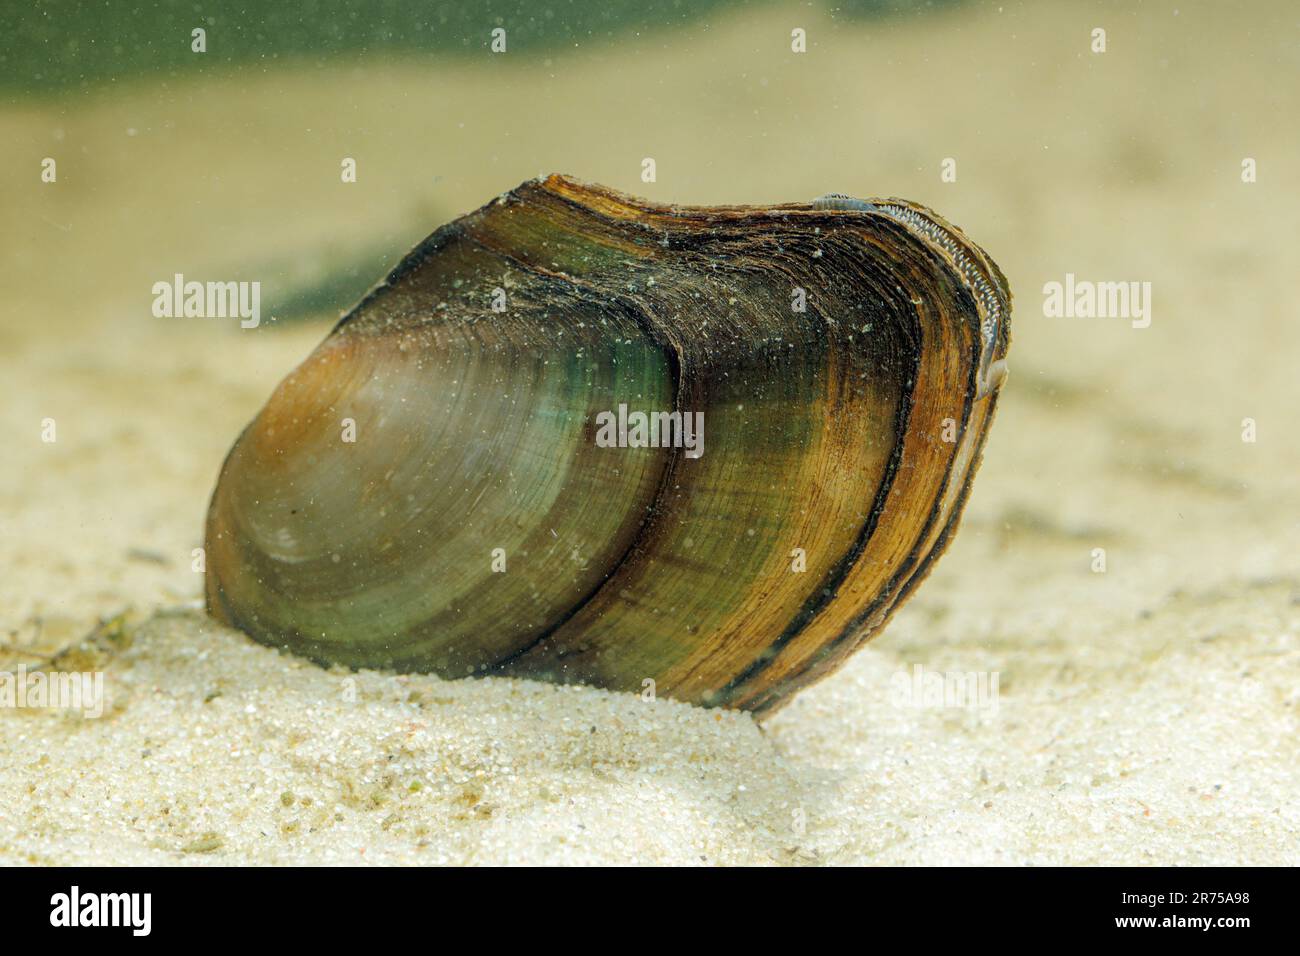 swan mussel (Anodonta cygnea), on sandy ground, Germany Stock Photo